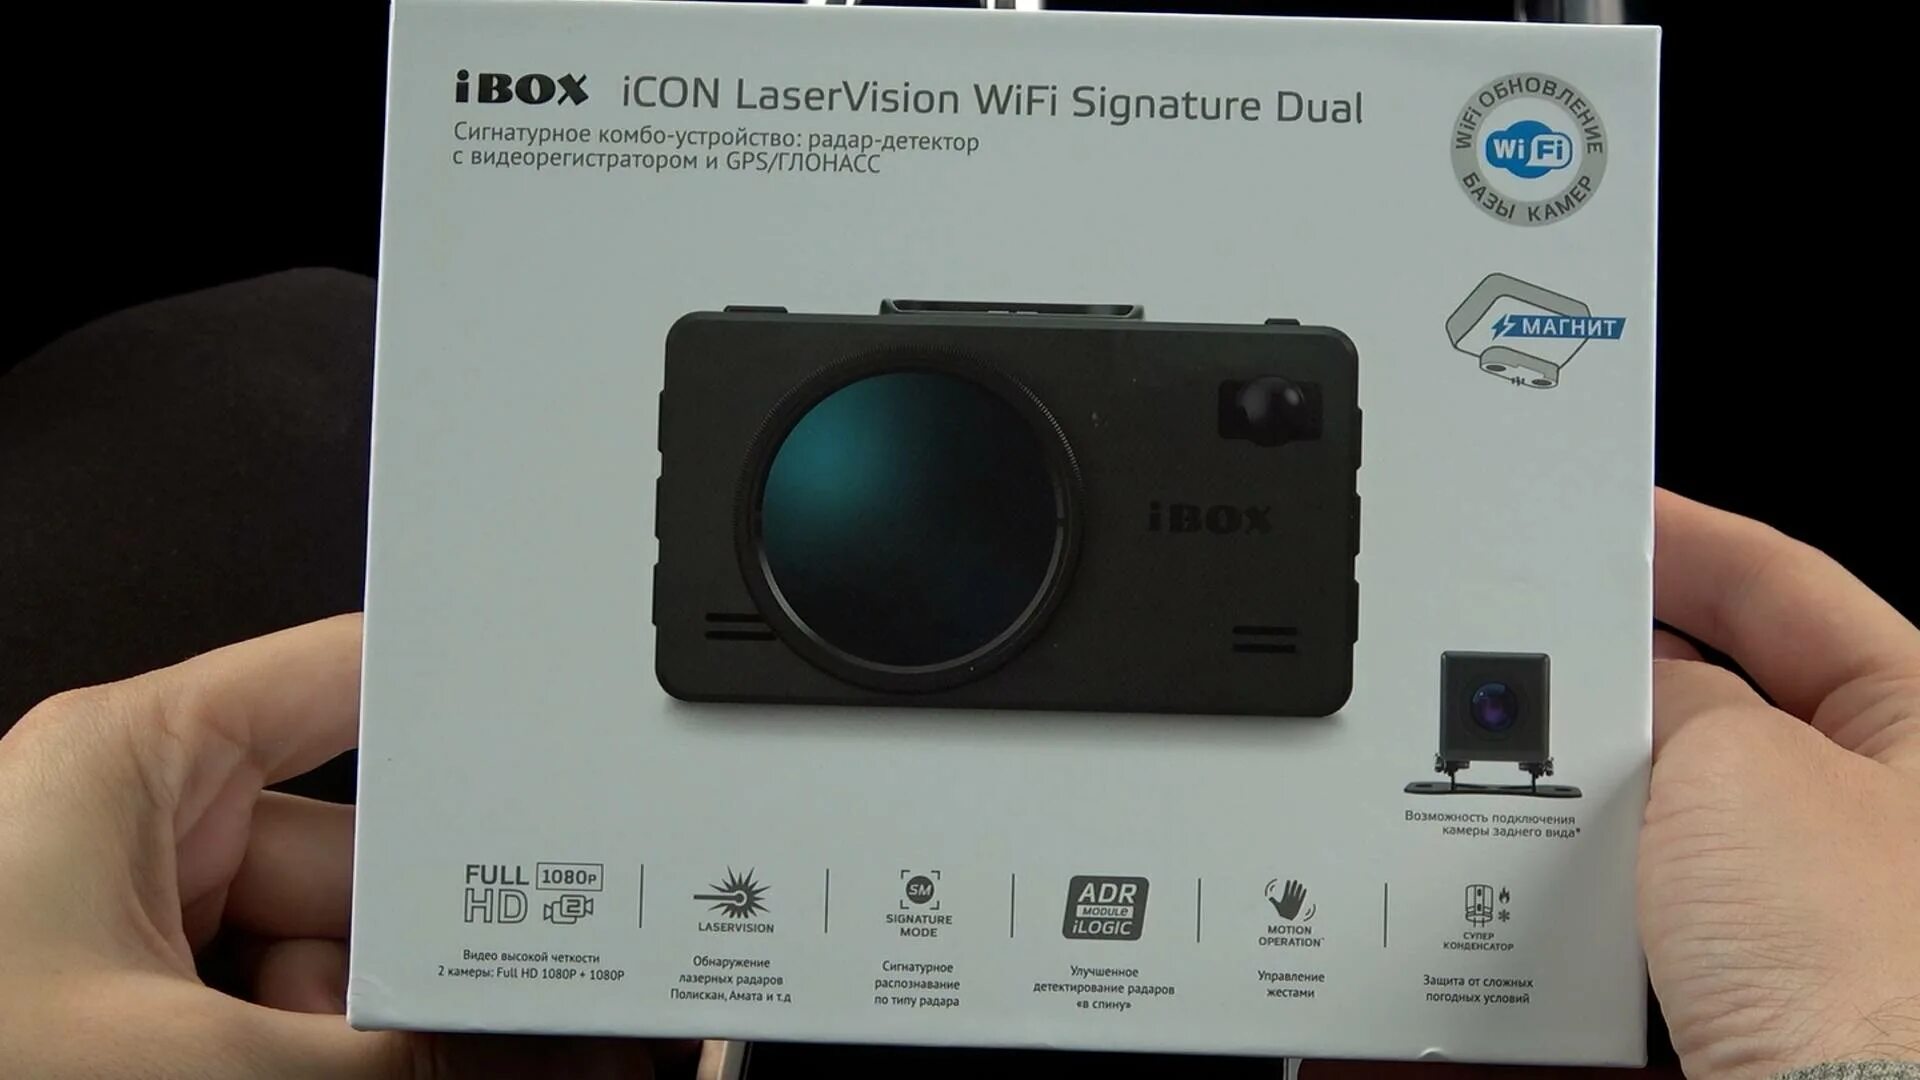 Ibox icon signature купить. Видеорегистратор IBOX icone laservision. IBOX Laser Vision WIFI Signature Dual. IBOX icon WIFI Signature Dual. Видеорегистратор IBOX icon laservision w.